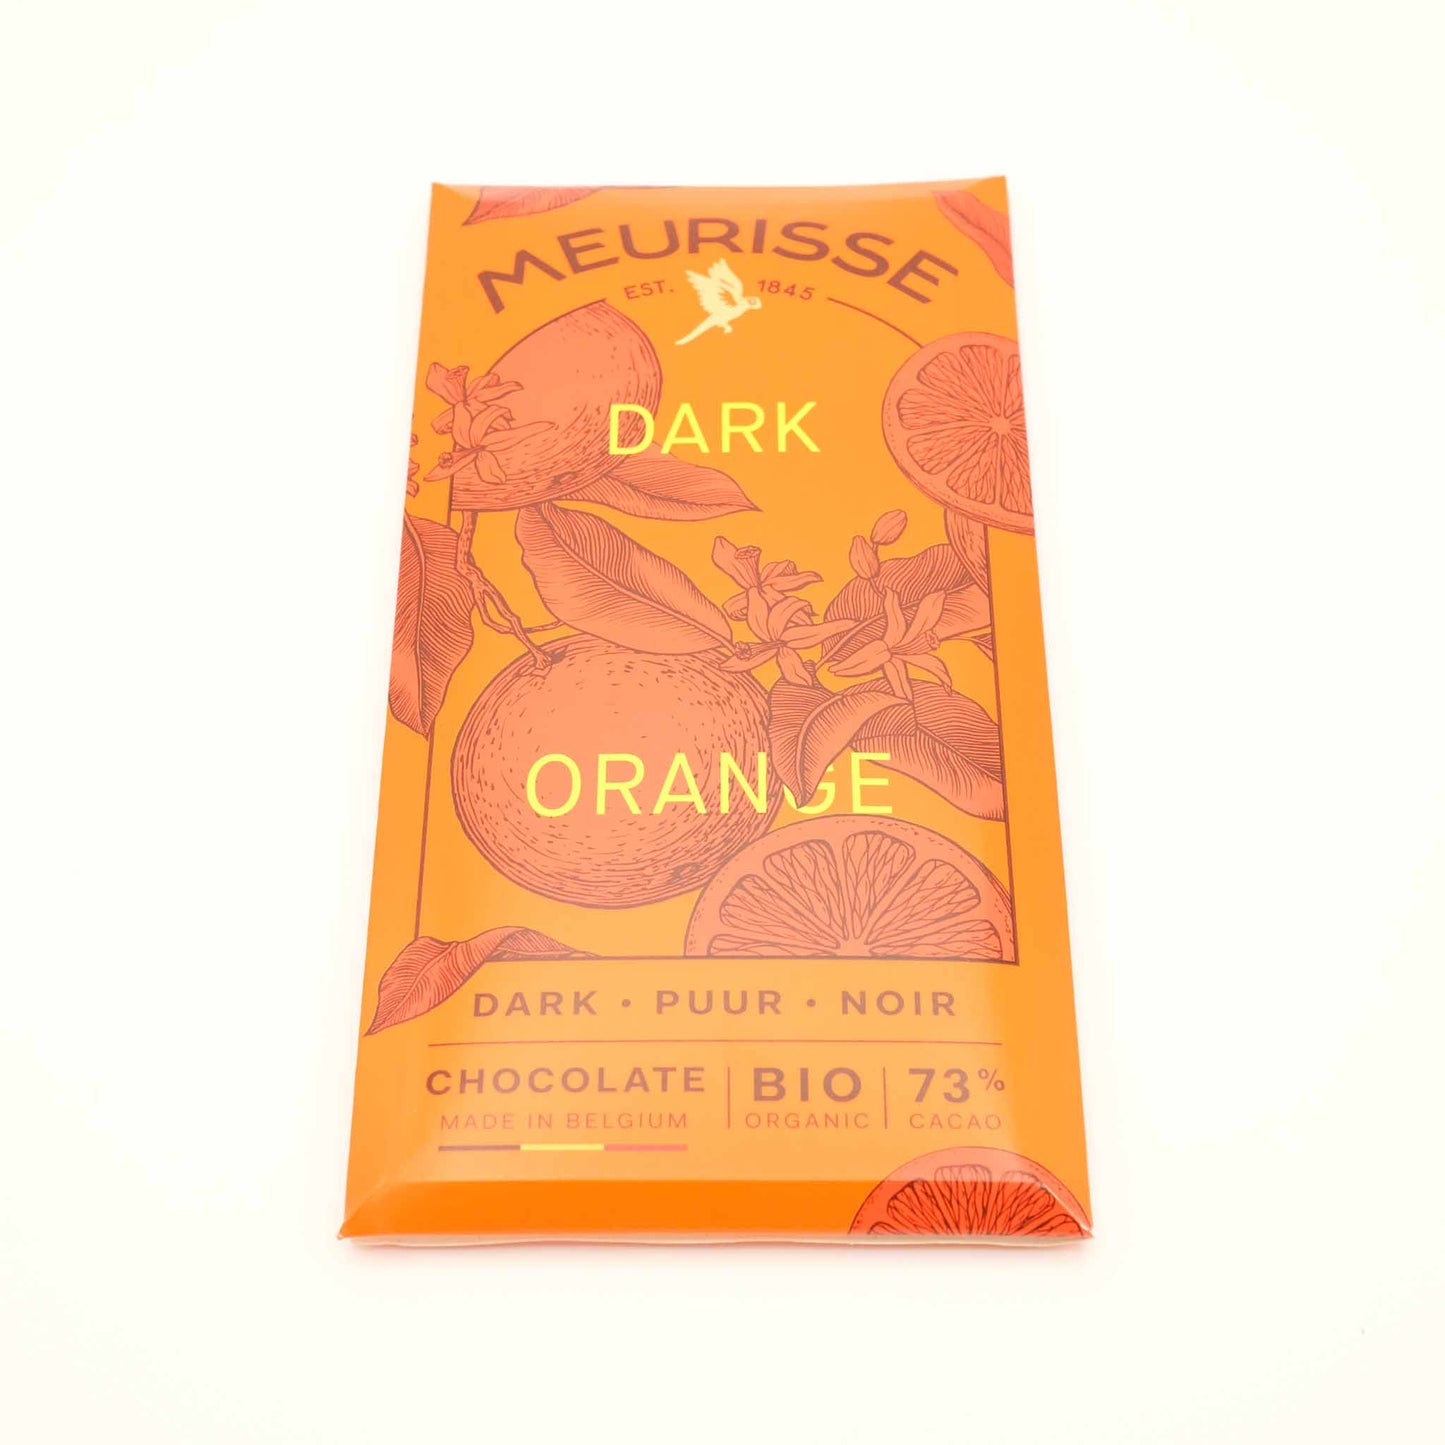 Meurisse Chocolate Dark orange